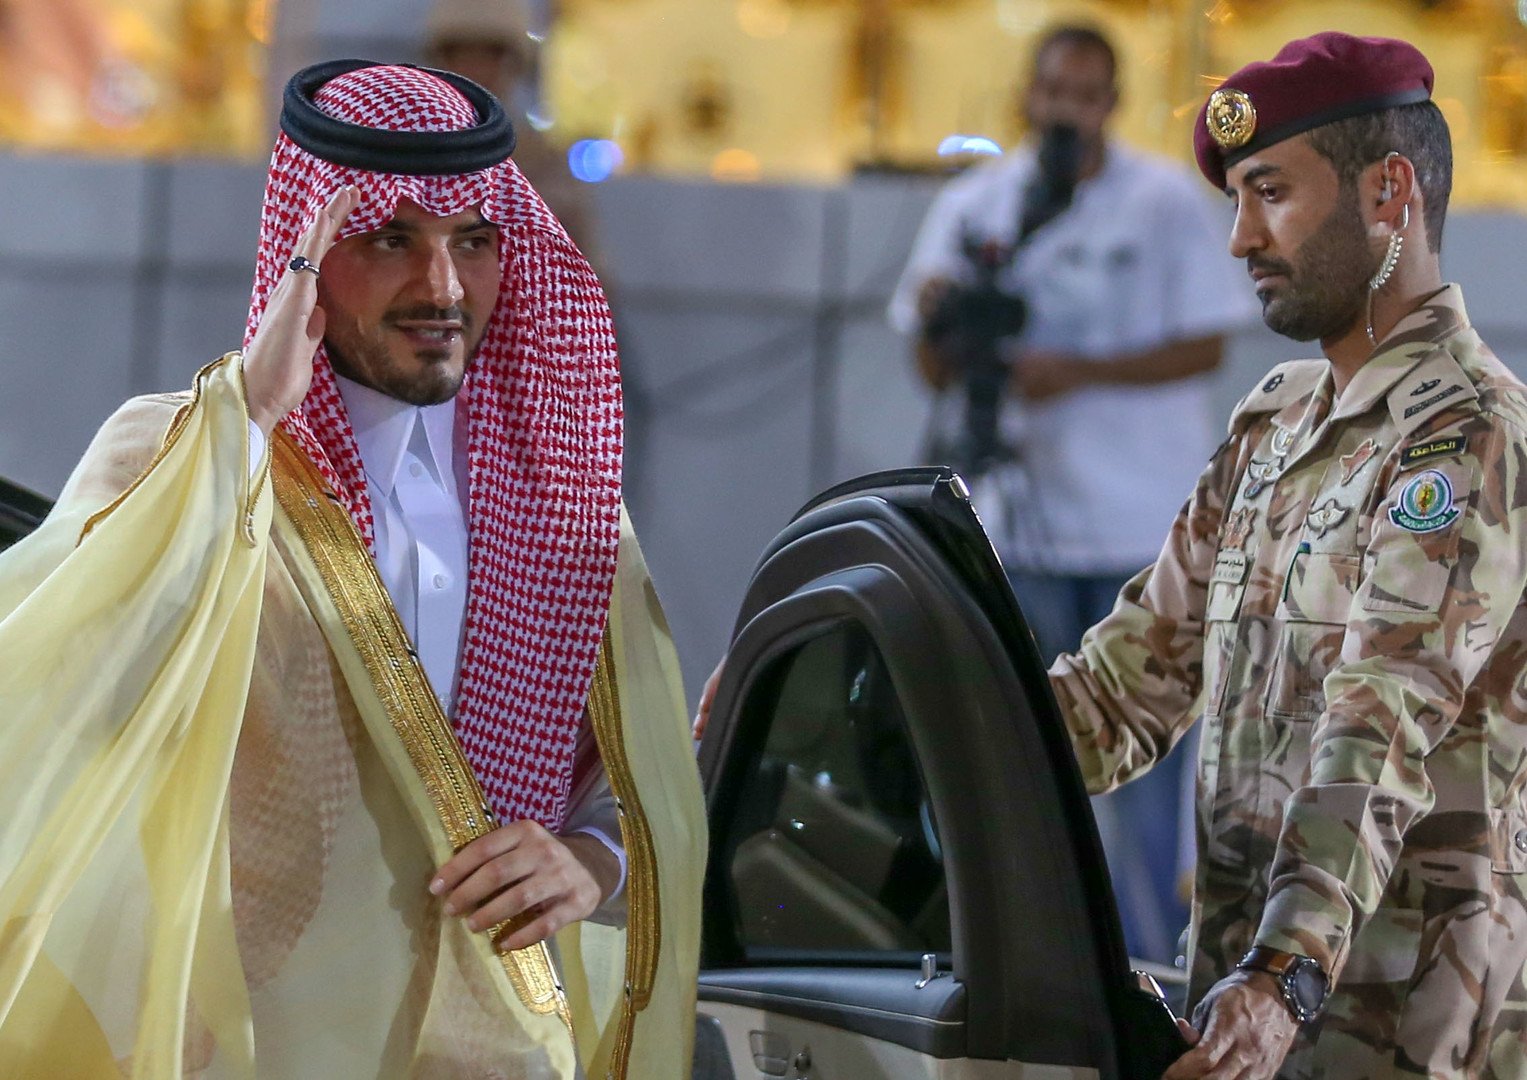 وزير الداخلية السعودي في تقرير مفصل عن موسم الحج هذا العام